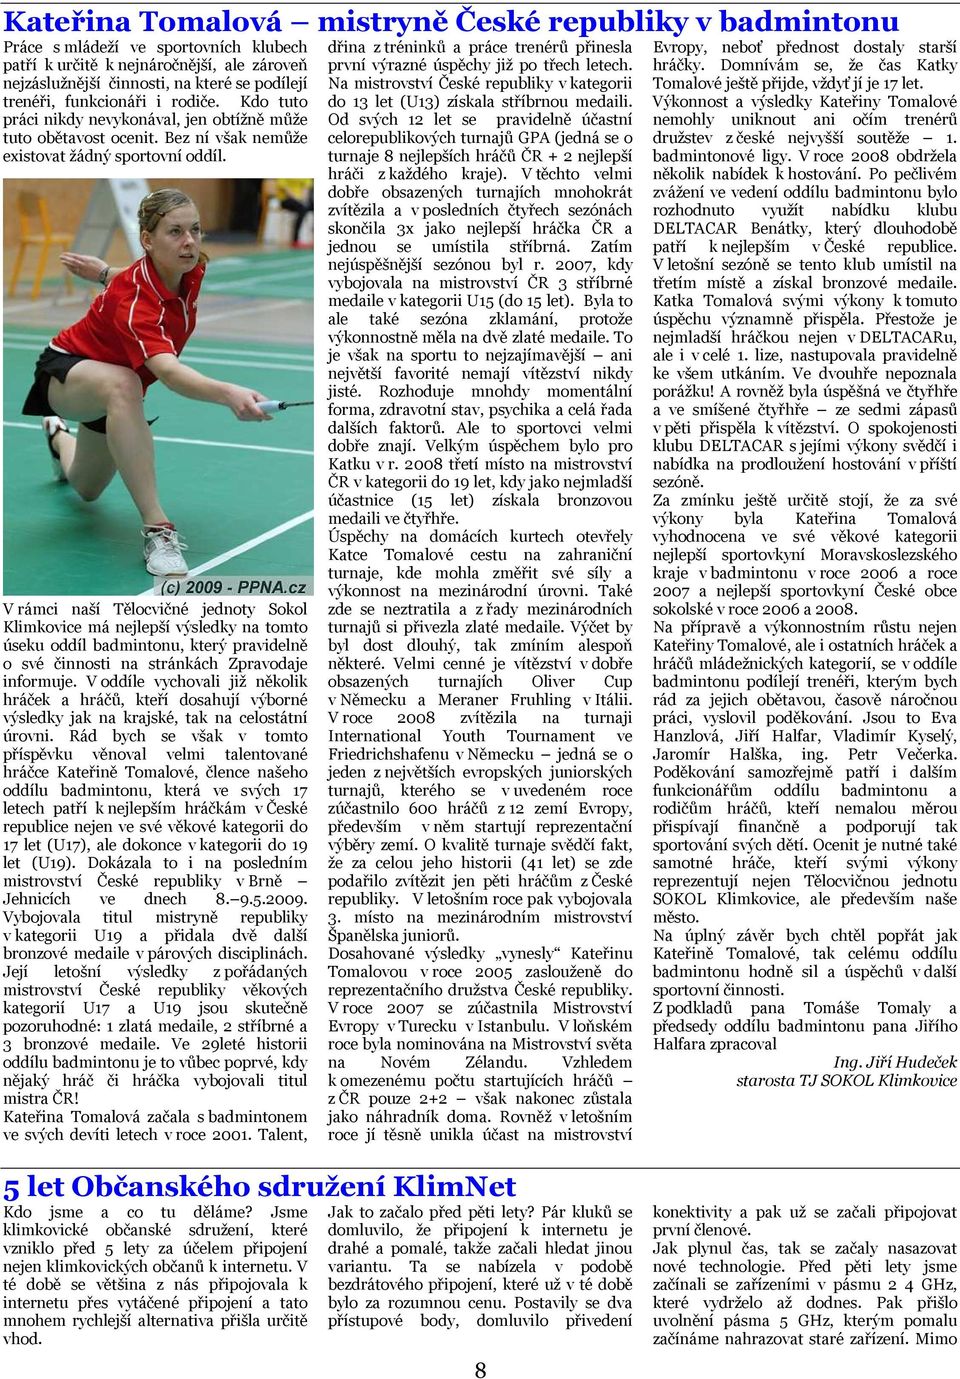 V rámci naší Tělocvičné jednoty Sokol Klimkovice má nejlepší výsledky na tomto úseku oddíl badmintonu, který pravidelně o své činnosti na stránkách Zpravodaje informuje.